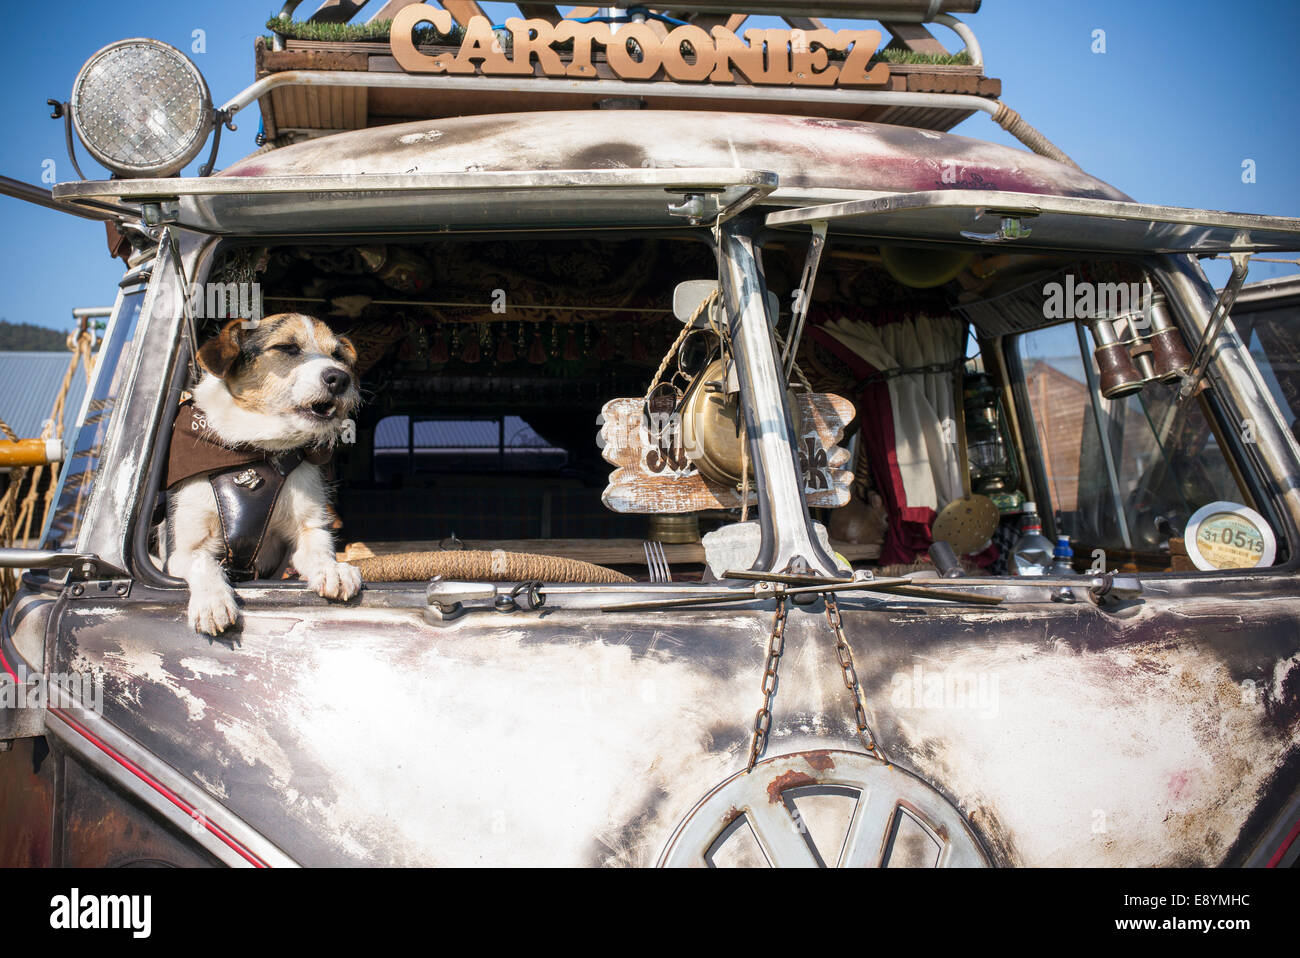 Terrier dog in the window of a rusty VW Rat Split Screen Volkswagen camper van at a VW show. England Stock Photo